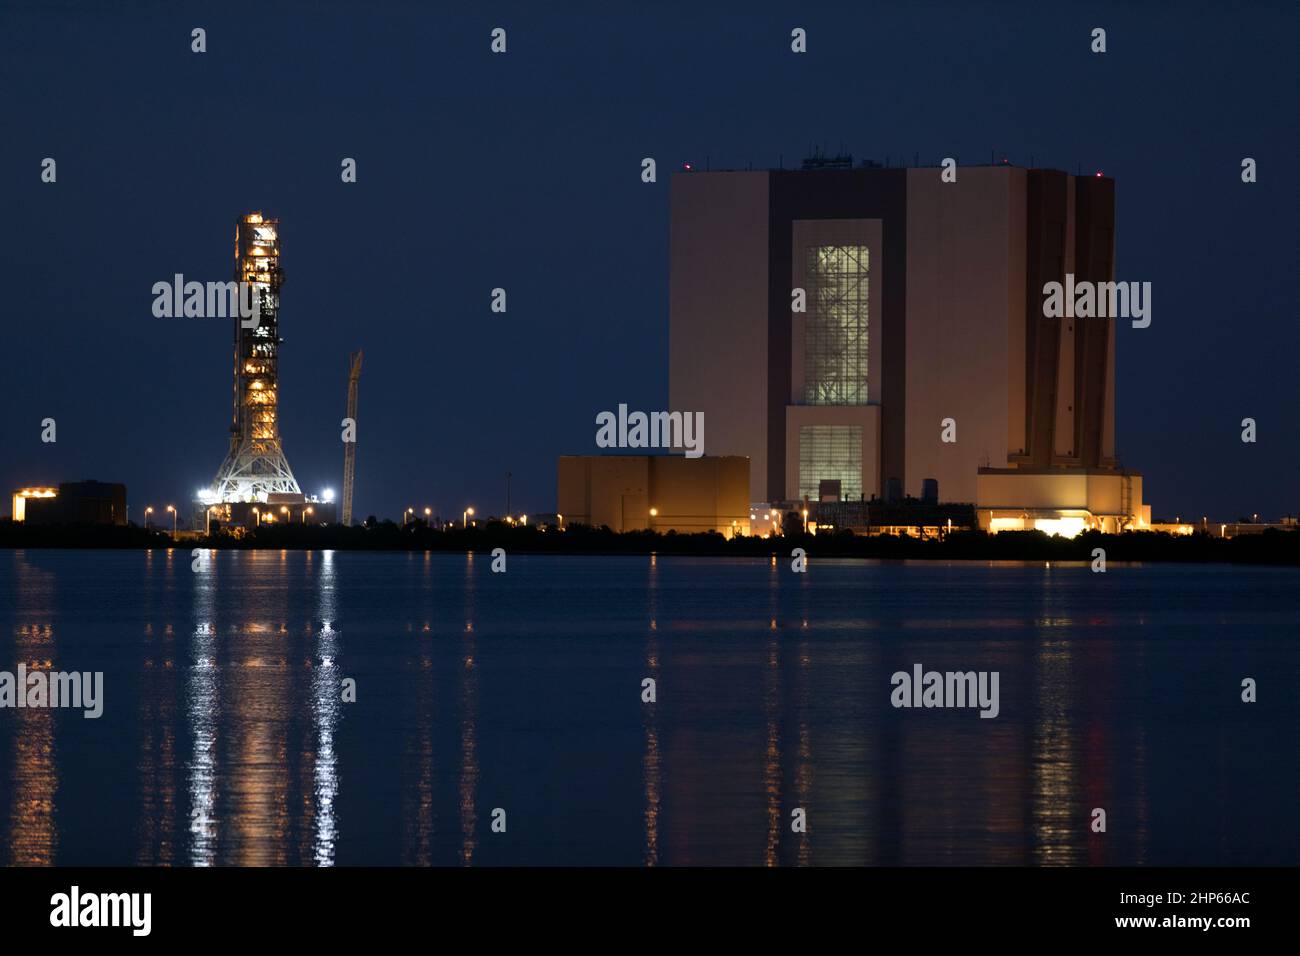 Con sus luces reflejadas en el agua, una vista nocturna del emblemático edificio de la Asamblea de Vehículos, a la derecha, y lanzador móvil en el Centro Espacial Kennedy de la NASA en Florida ca. 2018 Foto de stock